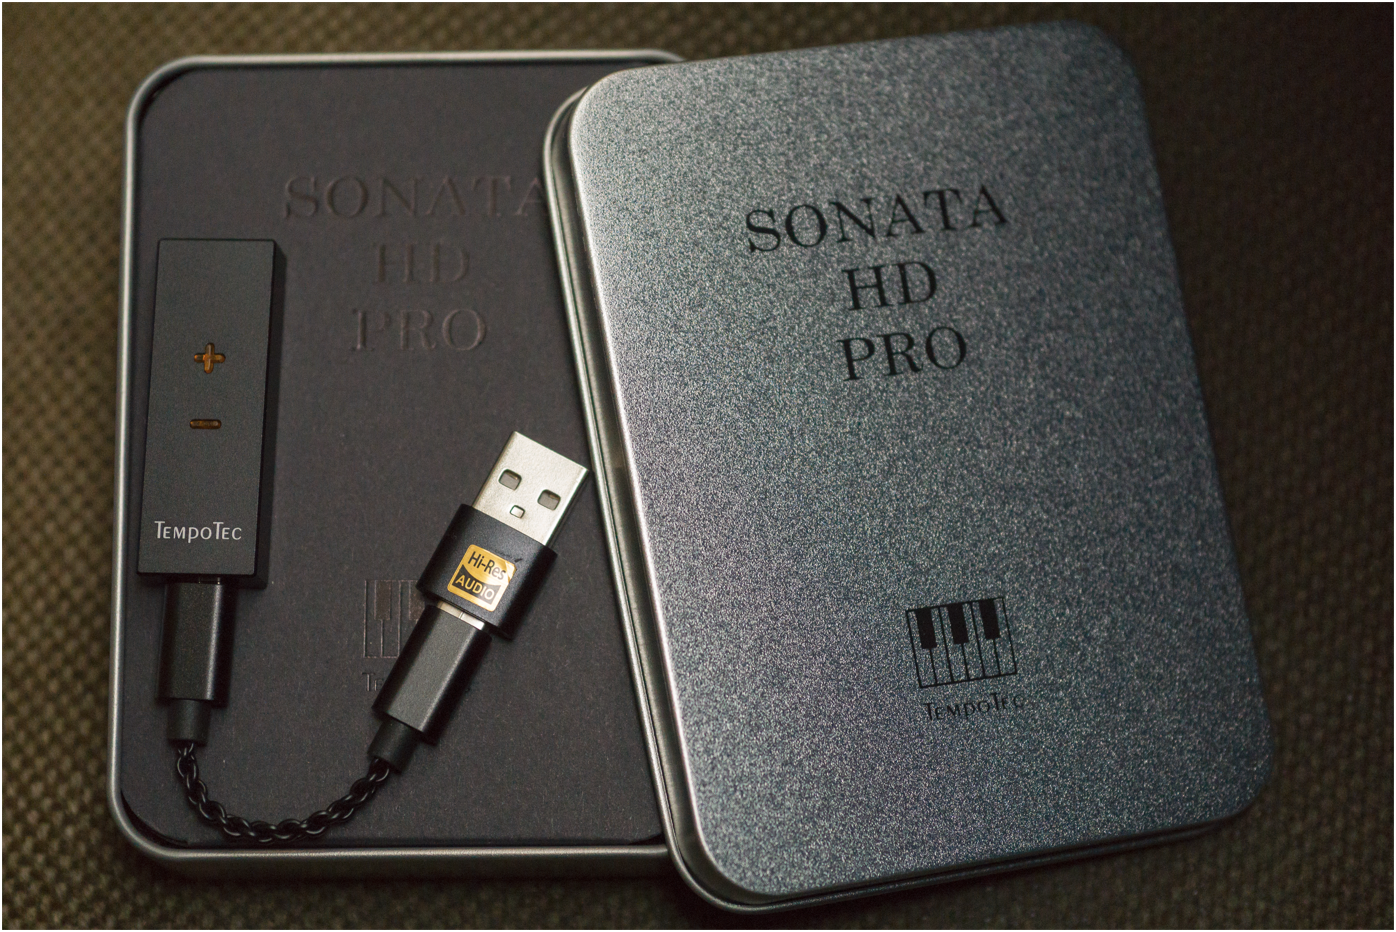 TempoTec Sonata HD Pro